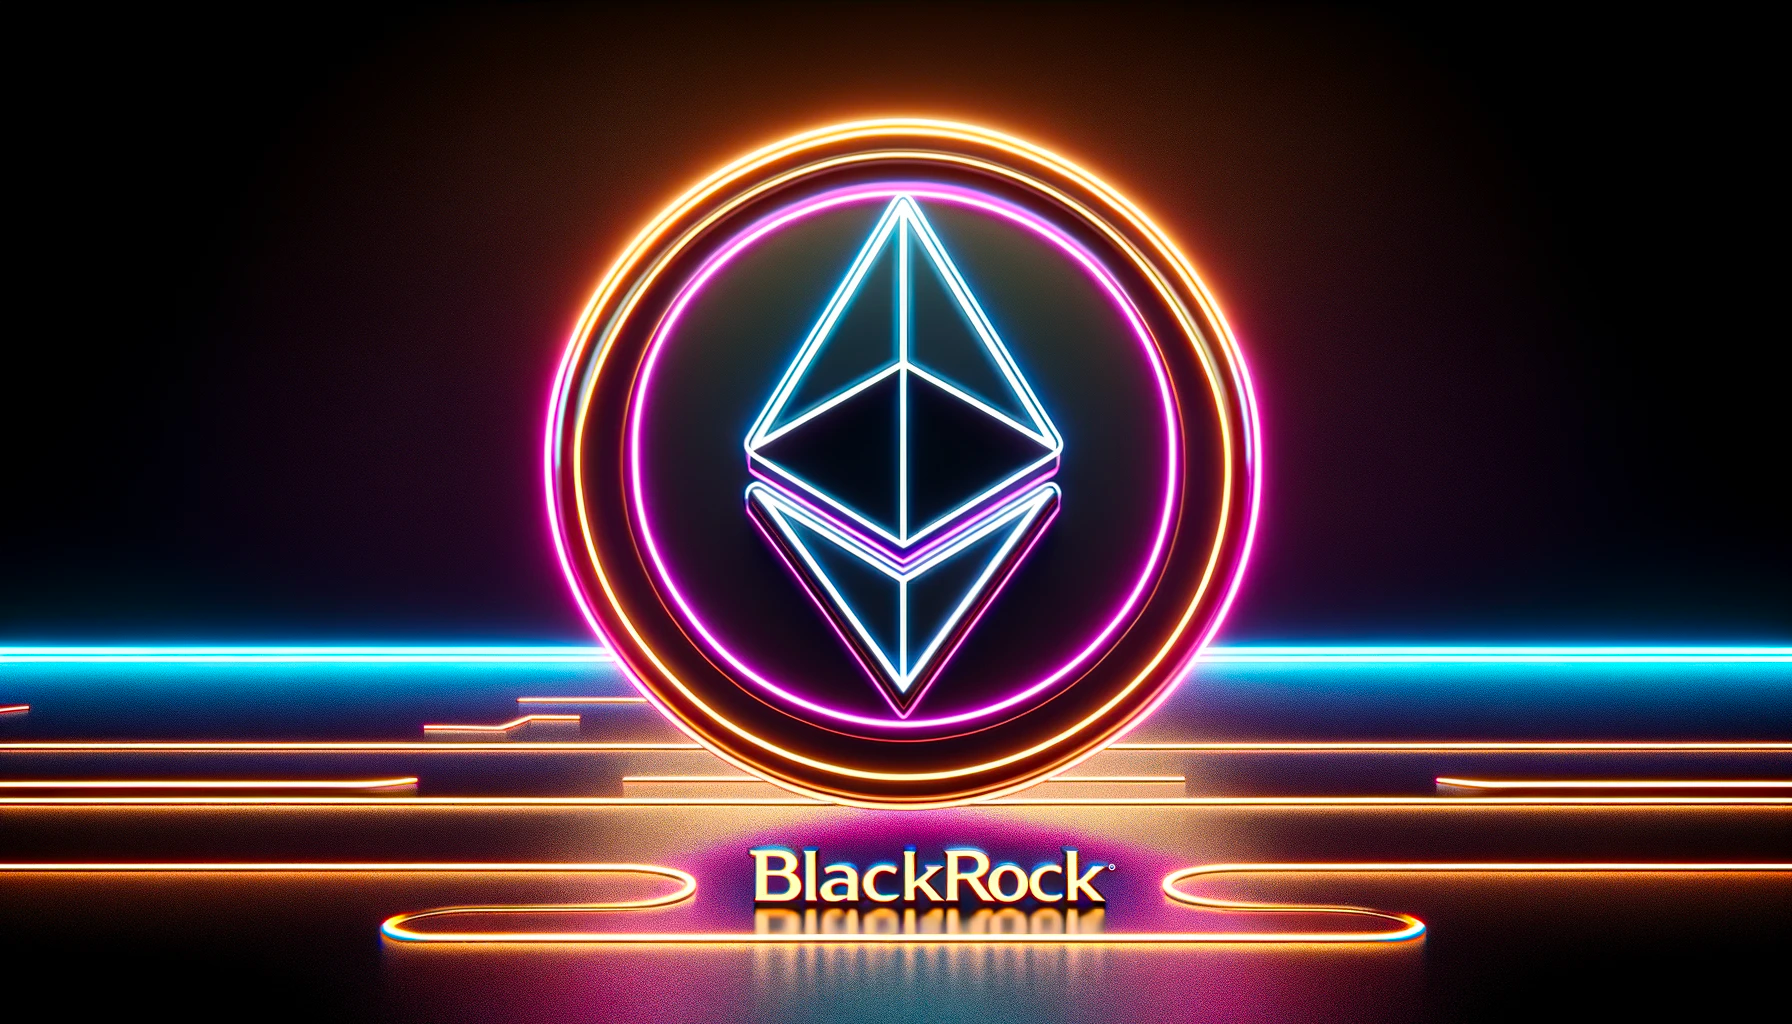 BlackRock CEO'su Larry Fink, Ethereum ETF'sinde Değer Görüyor - The Defiant